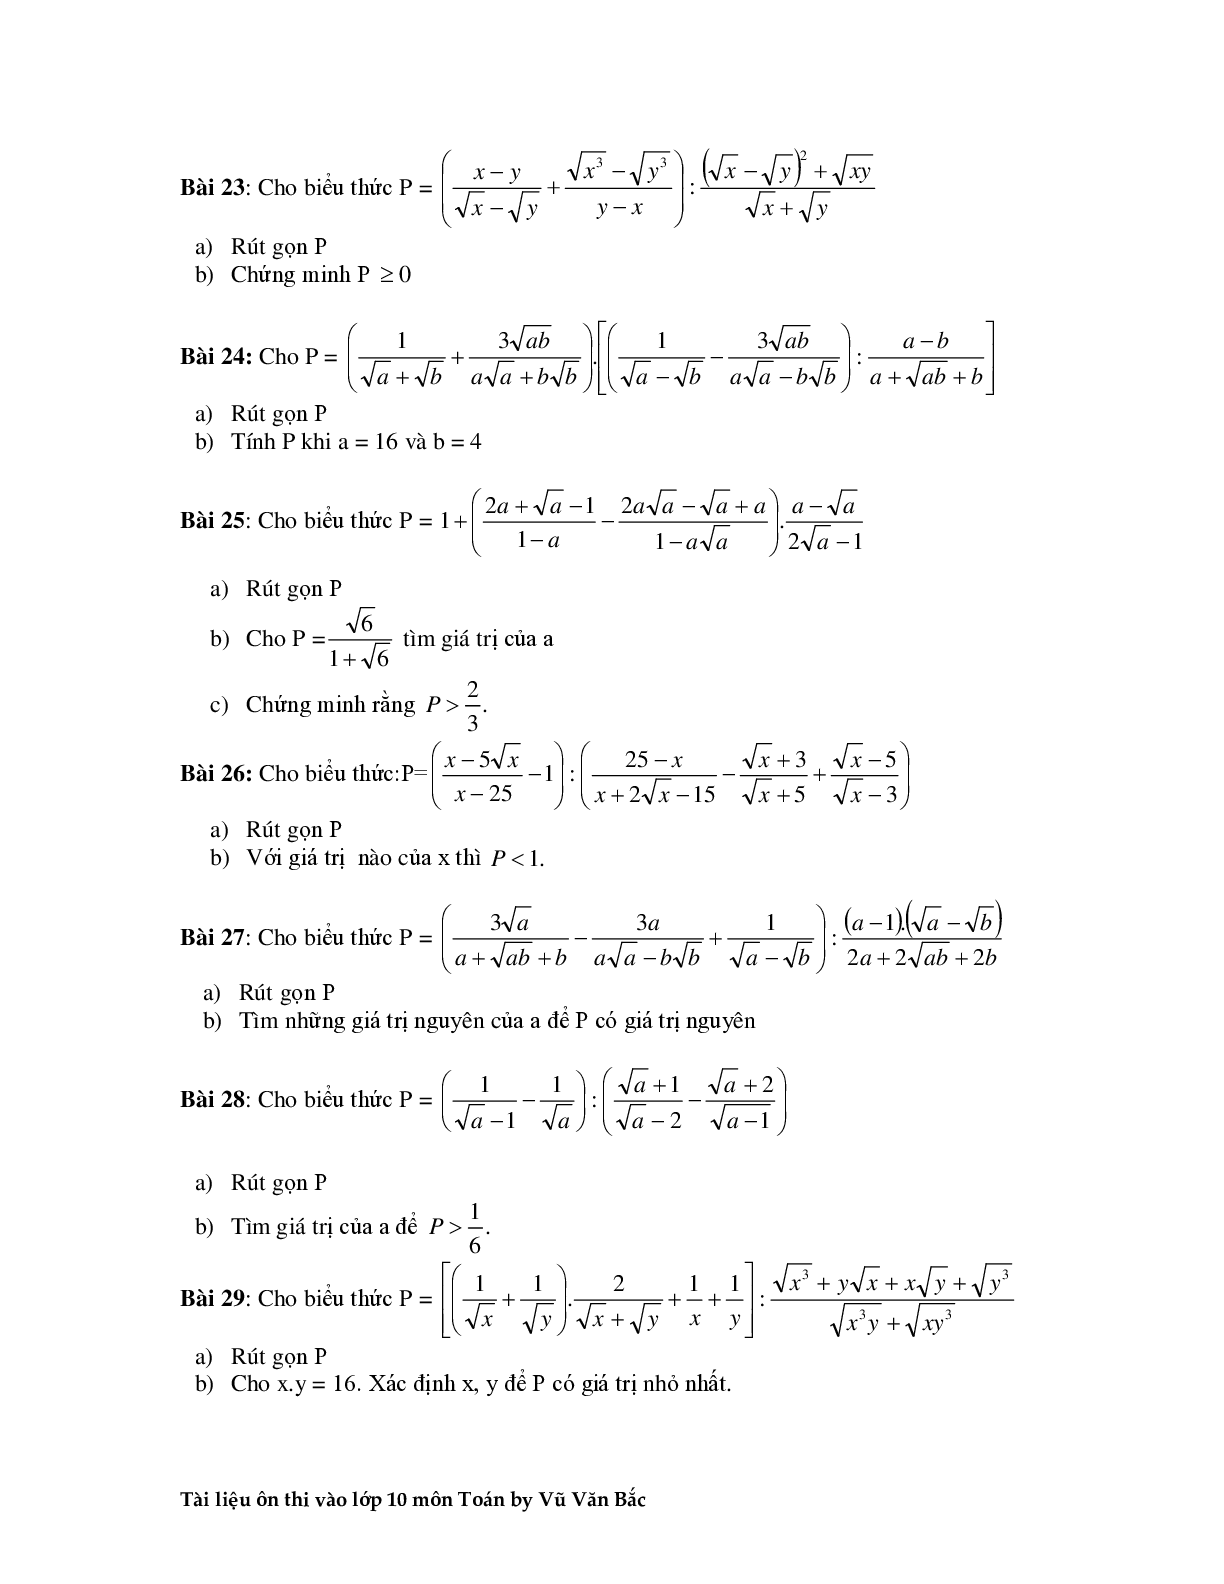 Tài liệu ôn thi vào lớp 10 môn toán (trang 7)